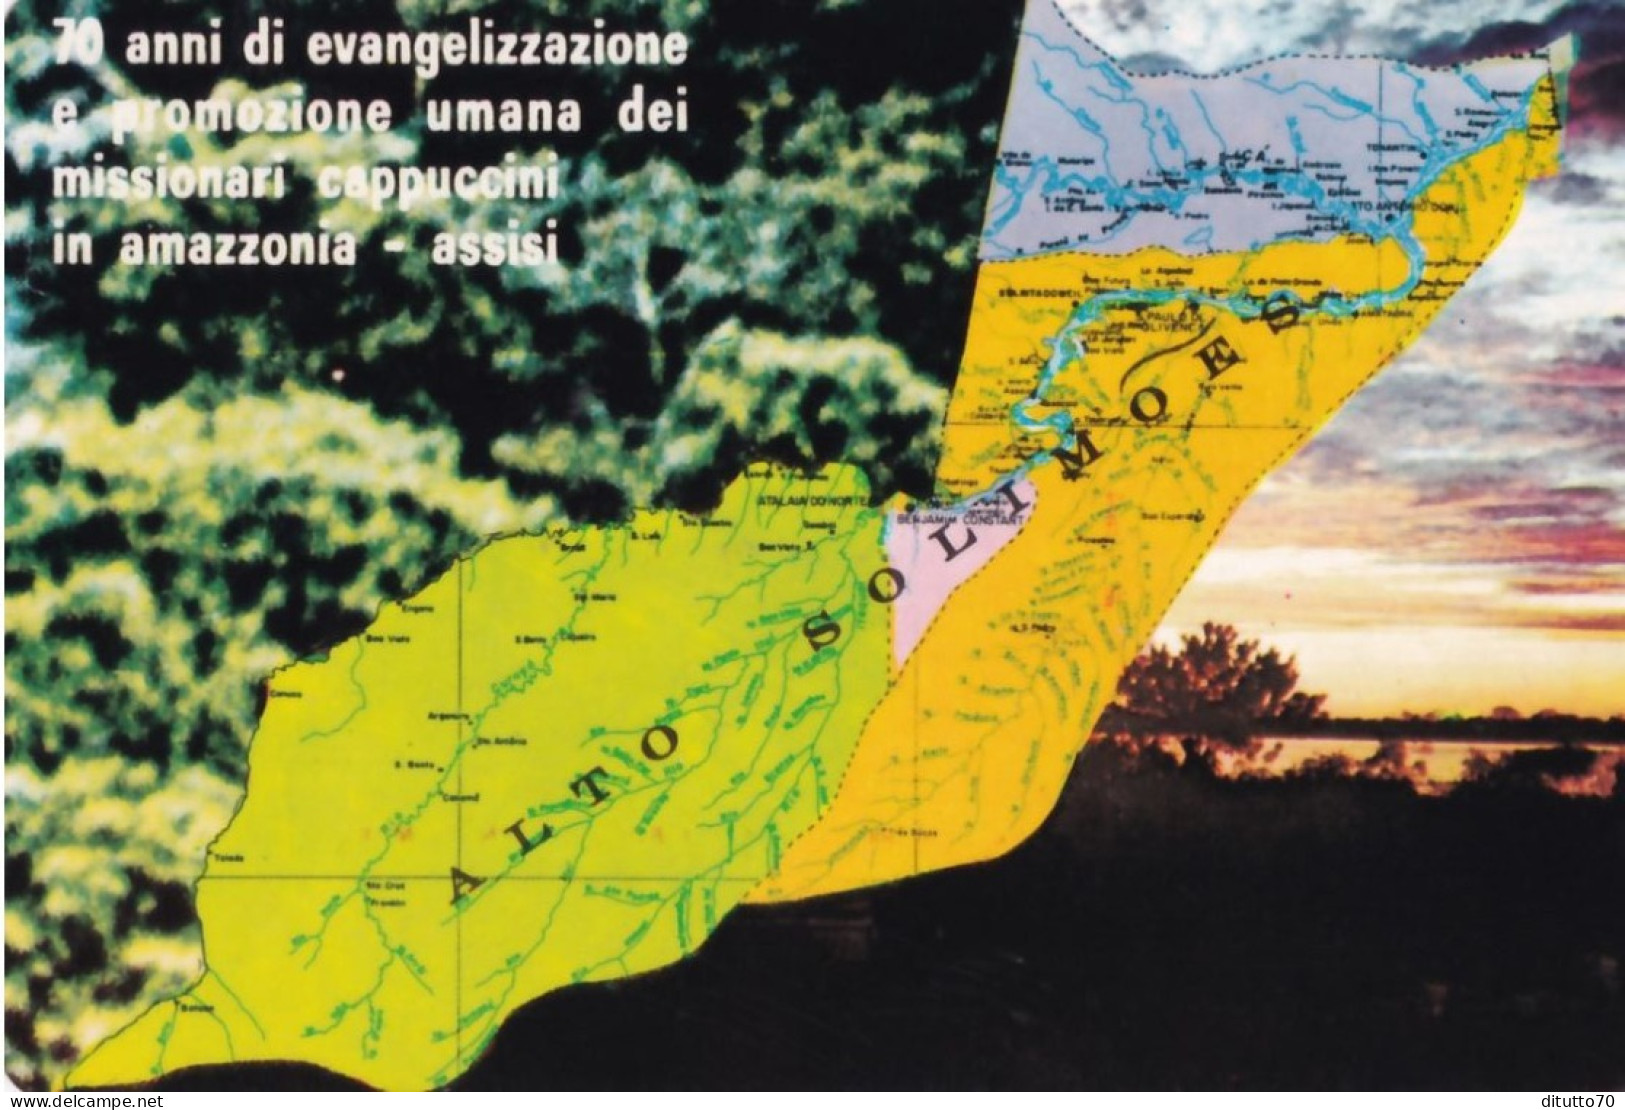 Calendarietto - Missione Cappuccini Amazzonia - Assisi - Anno 1980 - Kleinformat : 1971-80